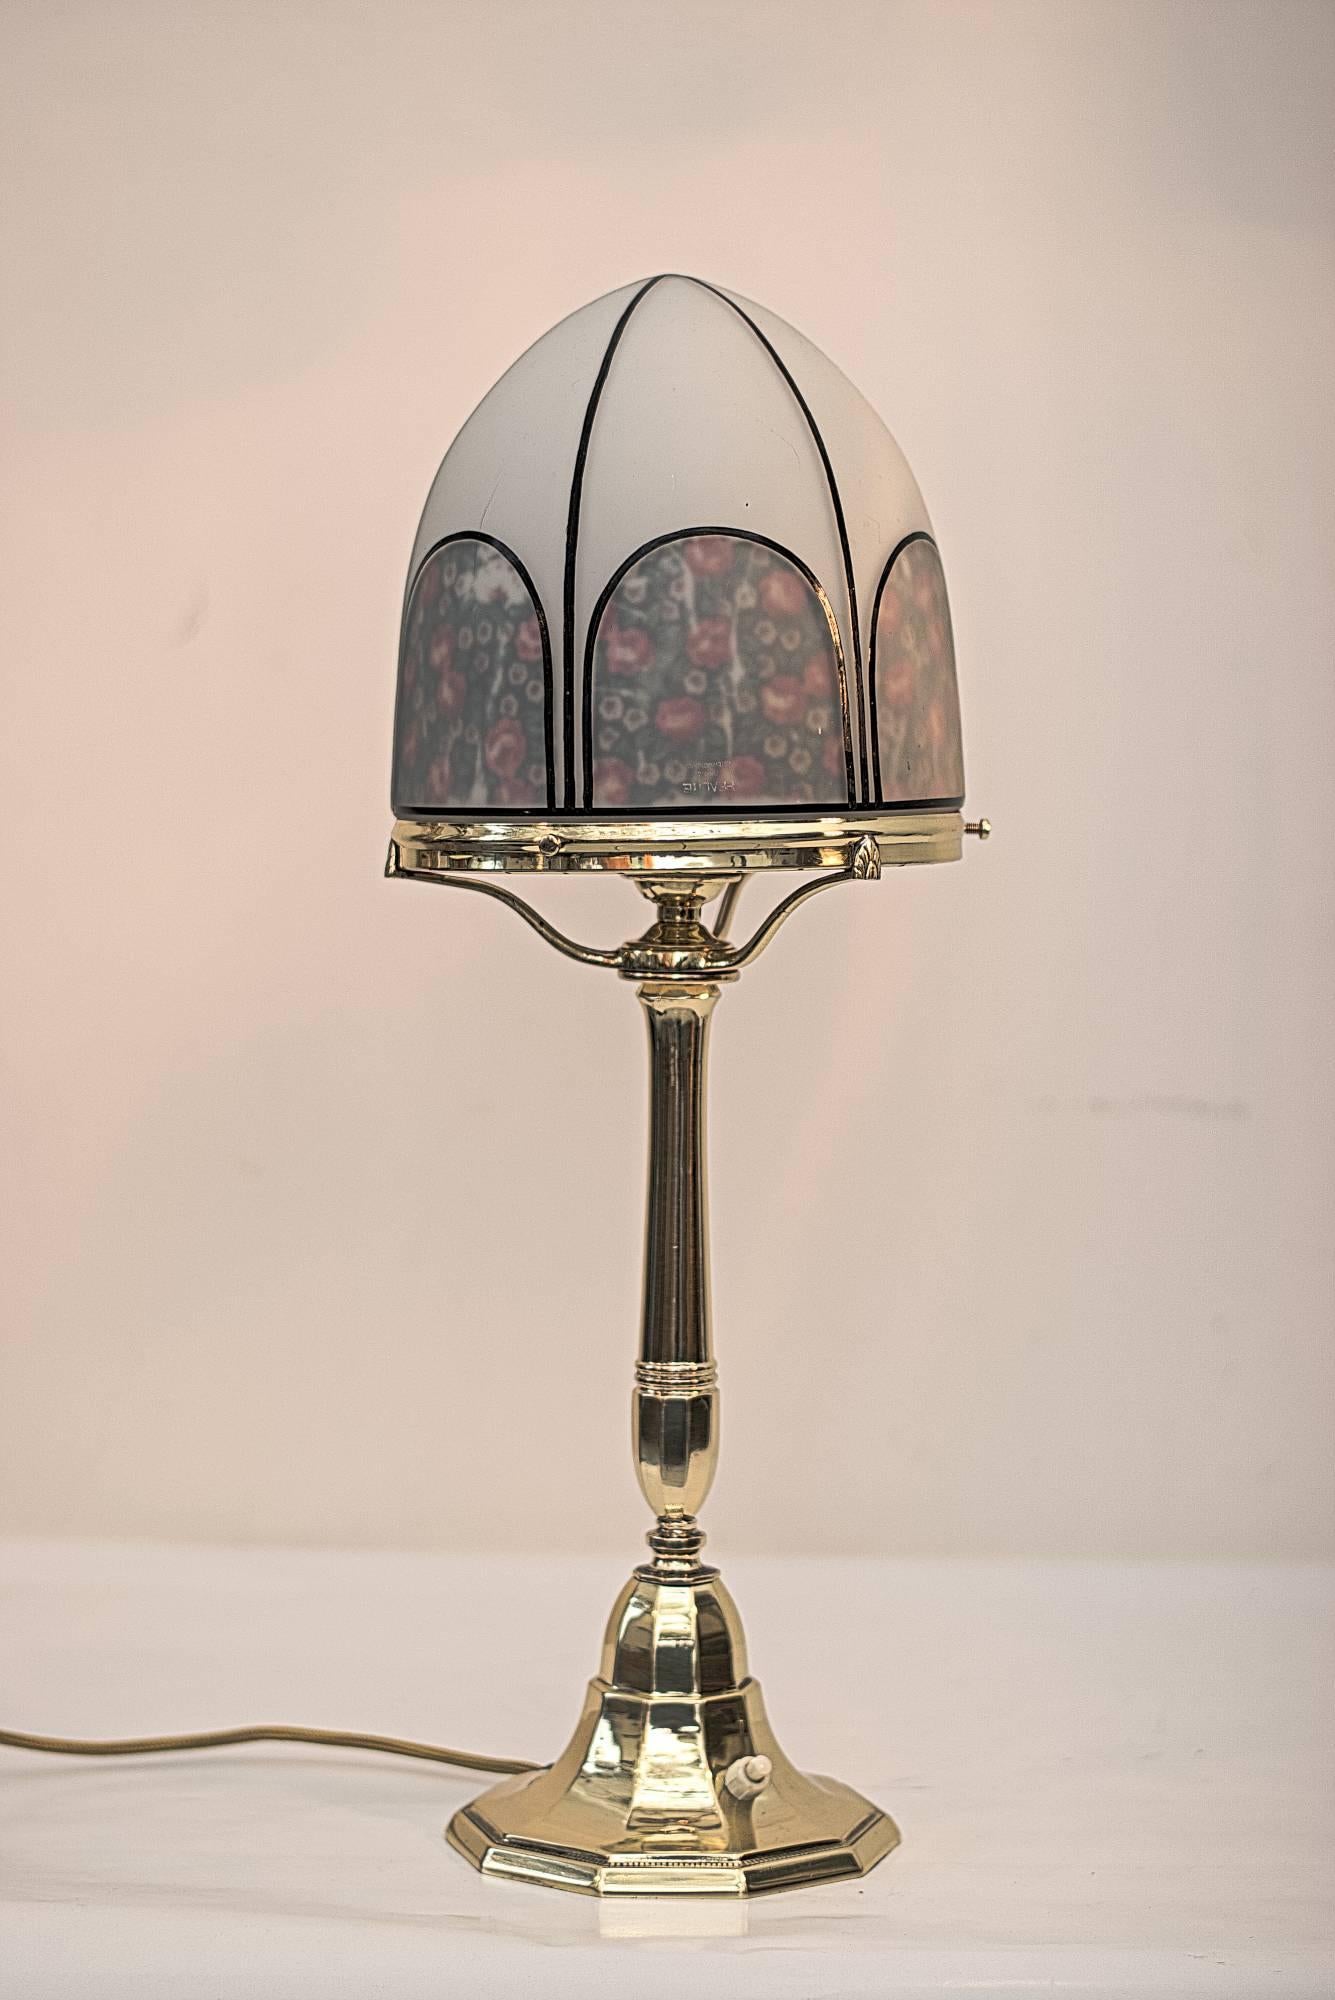 Jugendstil table lamp.
Polished and stove enameled.